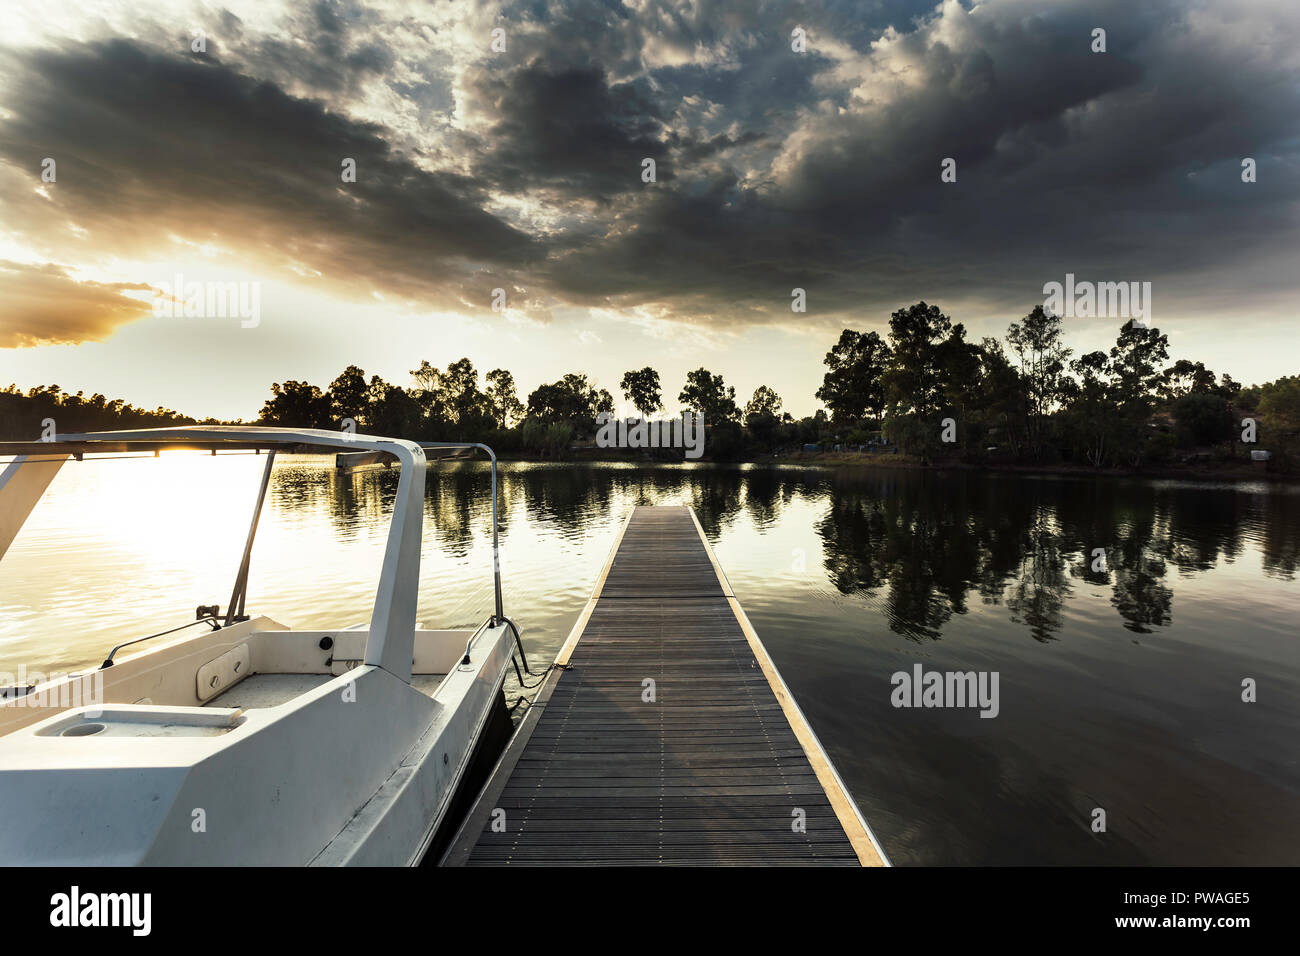 Pontile in legno con la barca ormeggiata presso la pala e riflessi dorati sulle acque del lago con un cielo coperto da nuvole in background Foto Stock